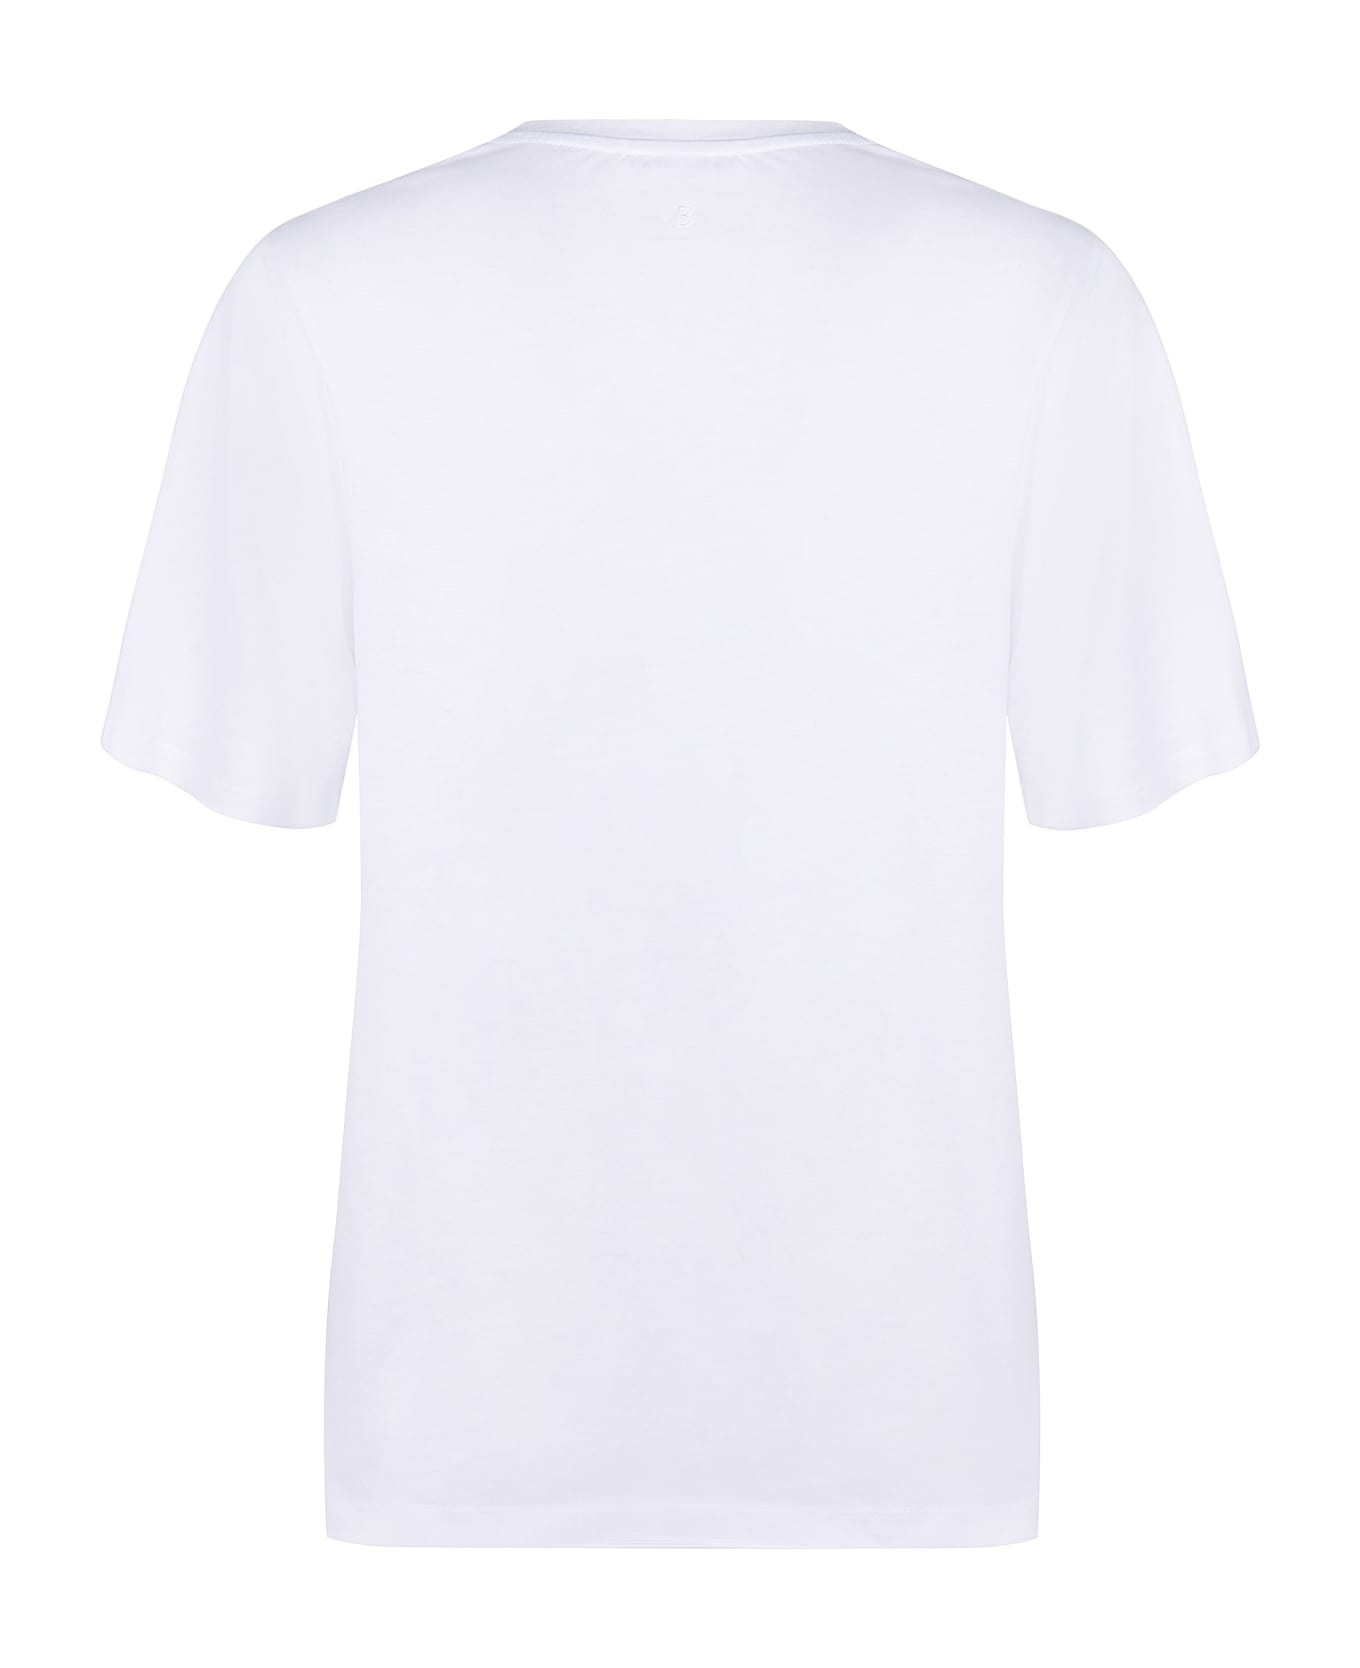 Victoria Beckham Cotton T-shirt - White Tシャツ